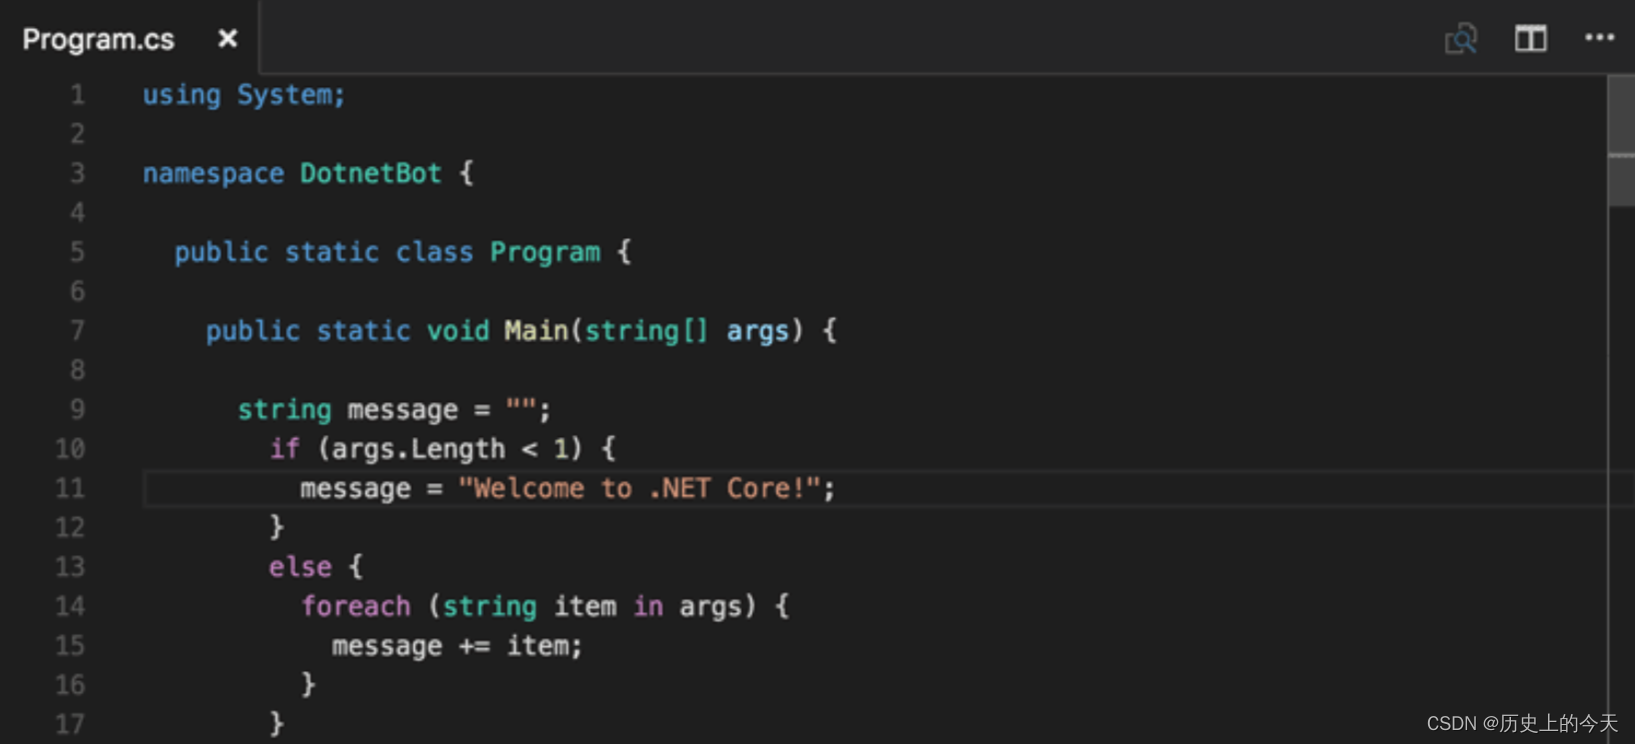 C many args. C Sharp код. Программирование c#. Язык программирования си Шарп. Образец кода на c#.